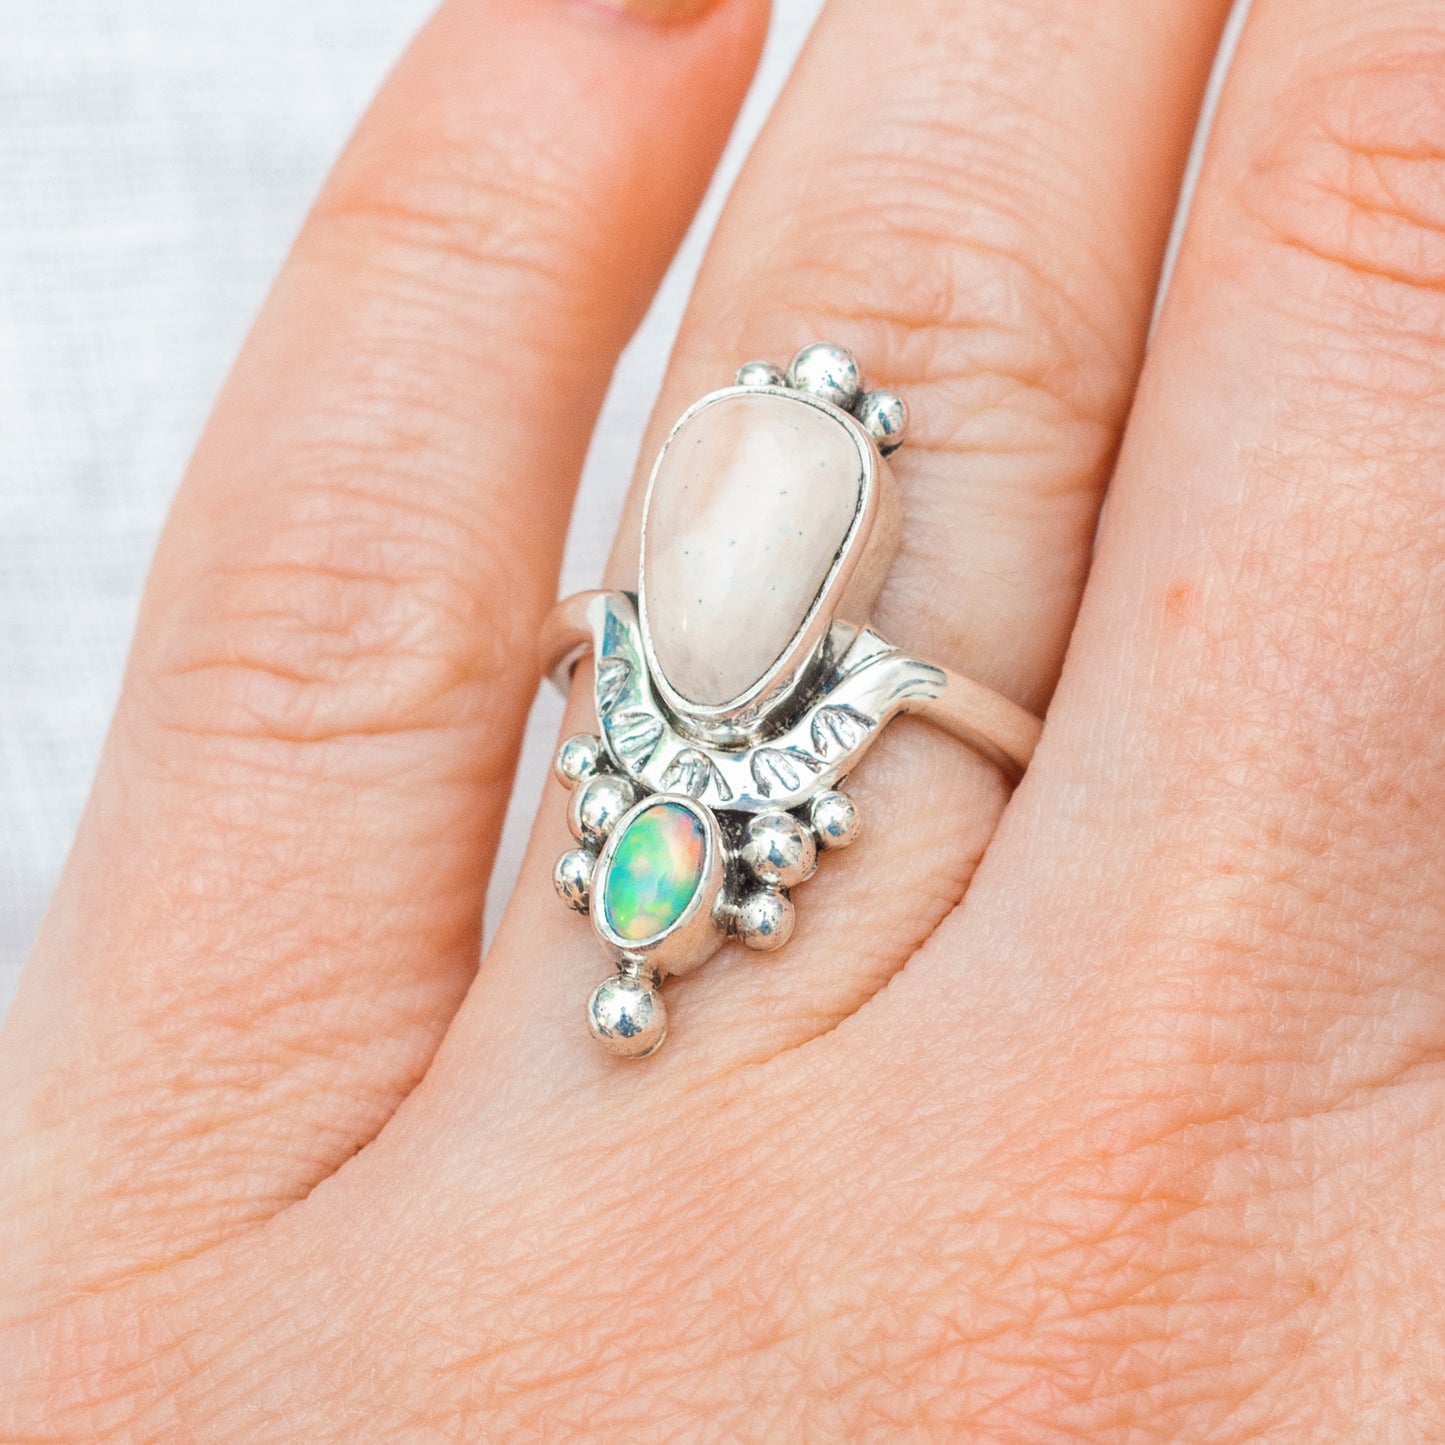 Kindred Embrace Ring ◇ Willow Creek Jasper + Australian Opal ◇ Size 8 ◇ Sterling Silver